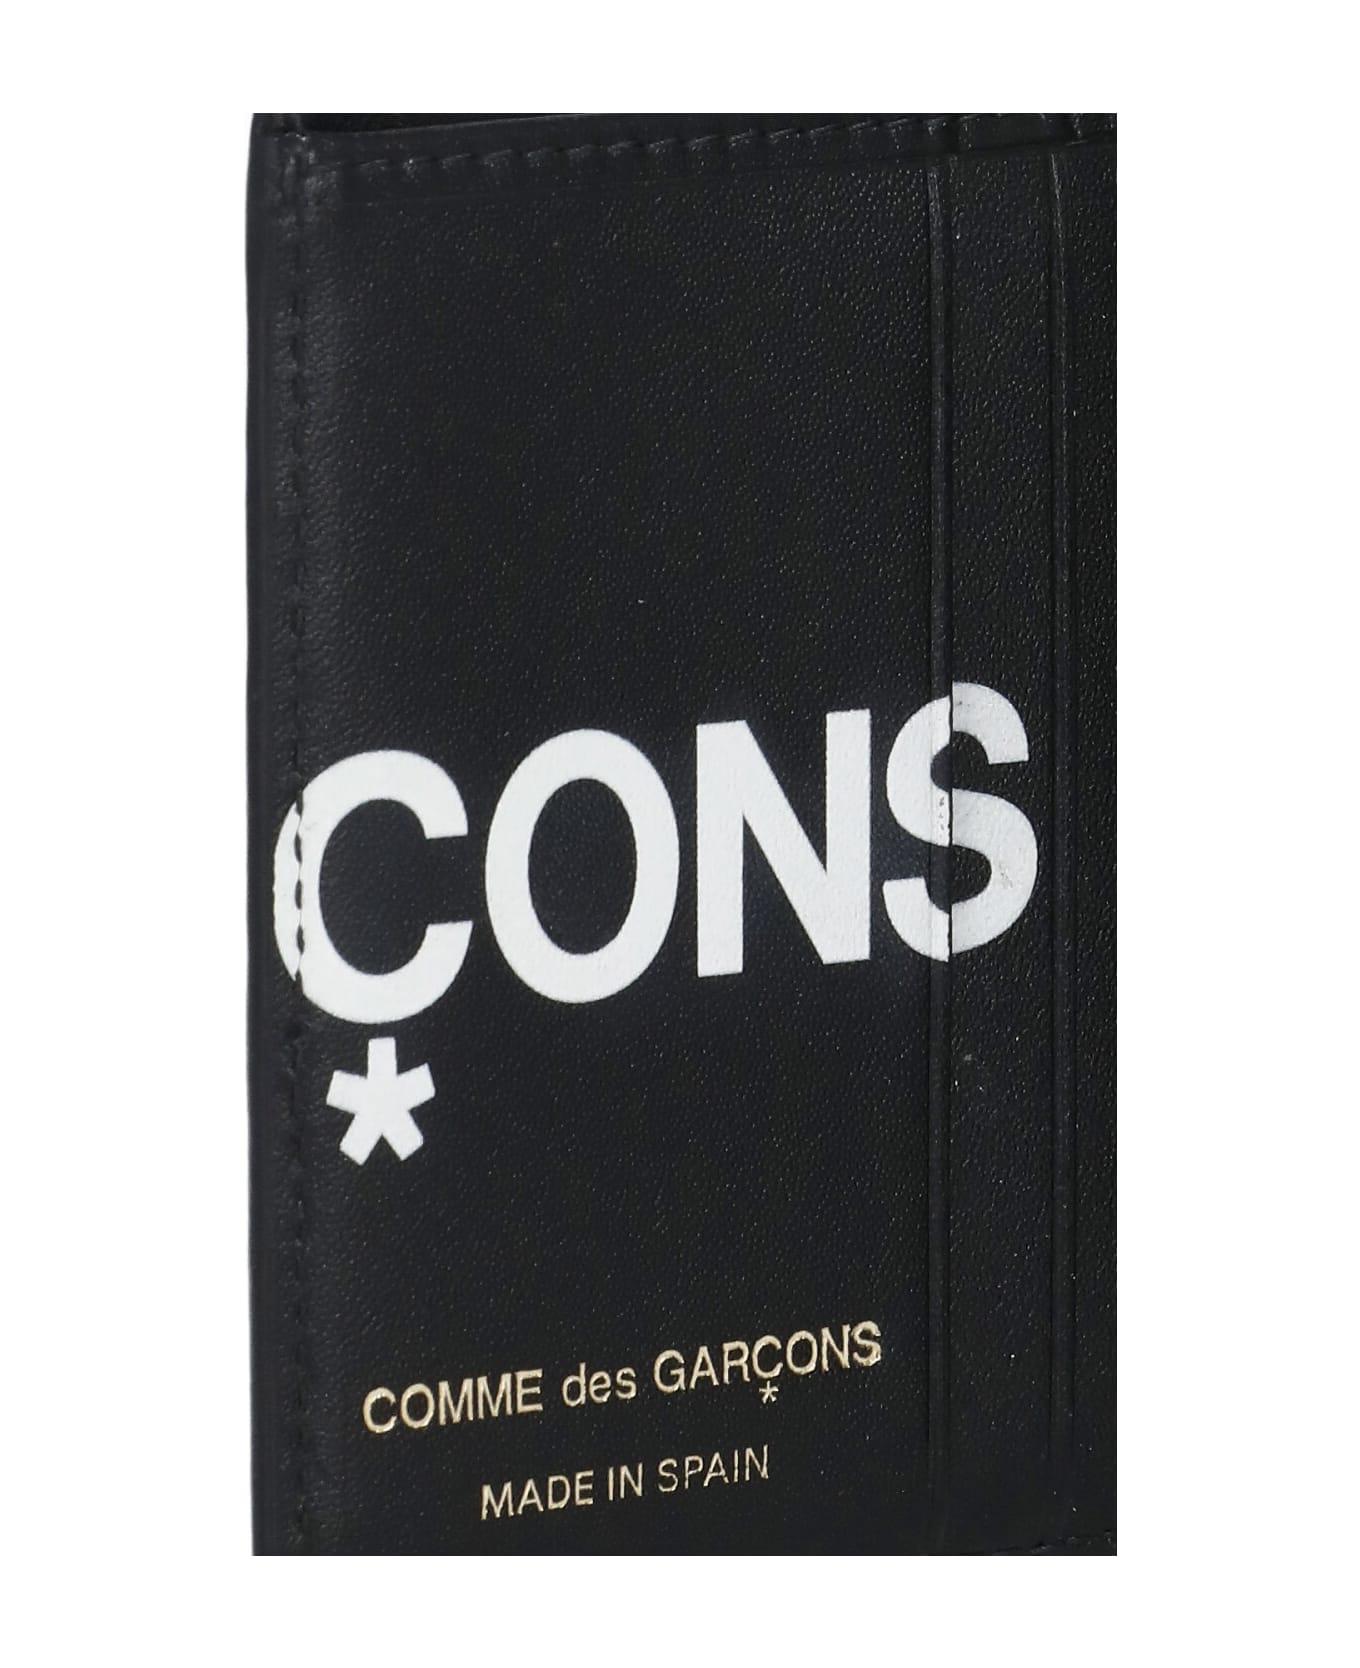 Comme des Garçons Wallet Wallet With Logo - Black 財布